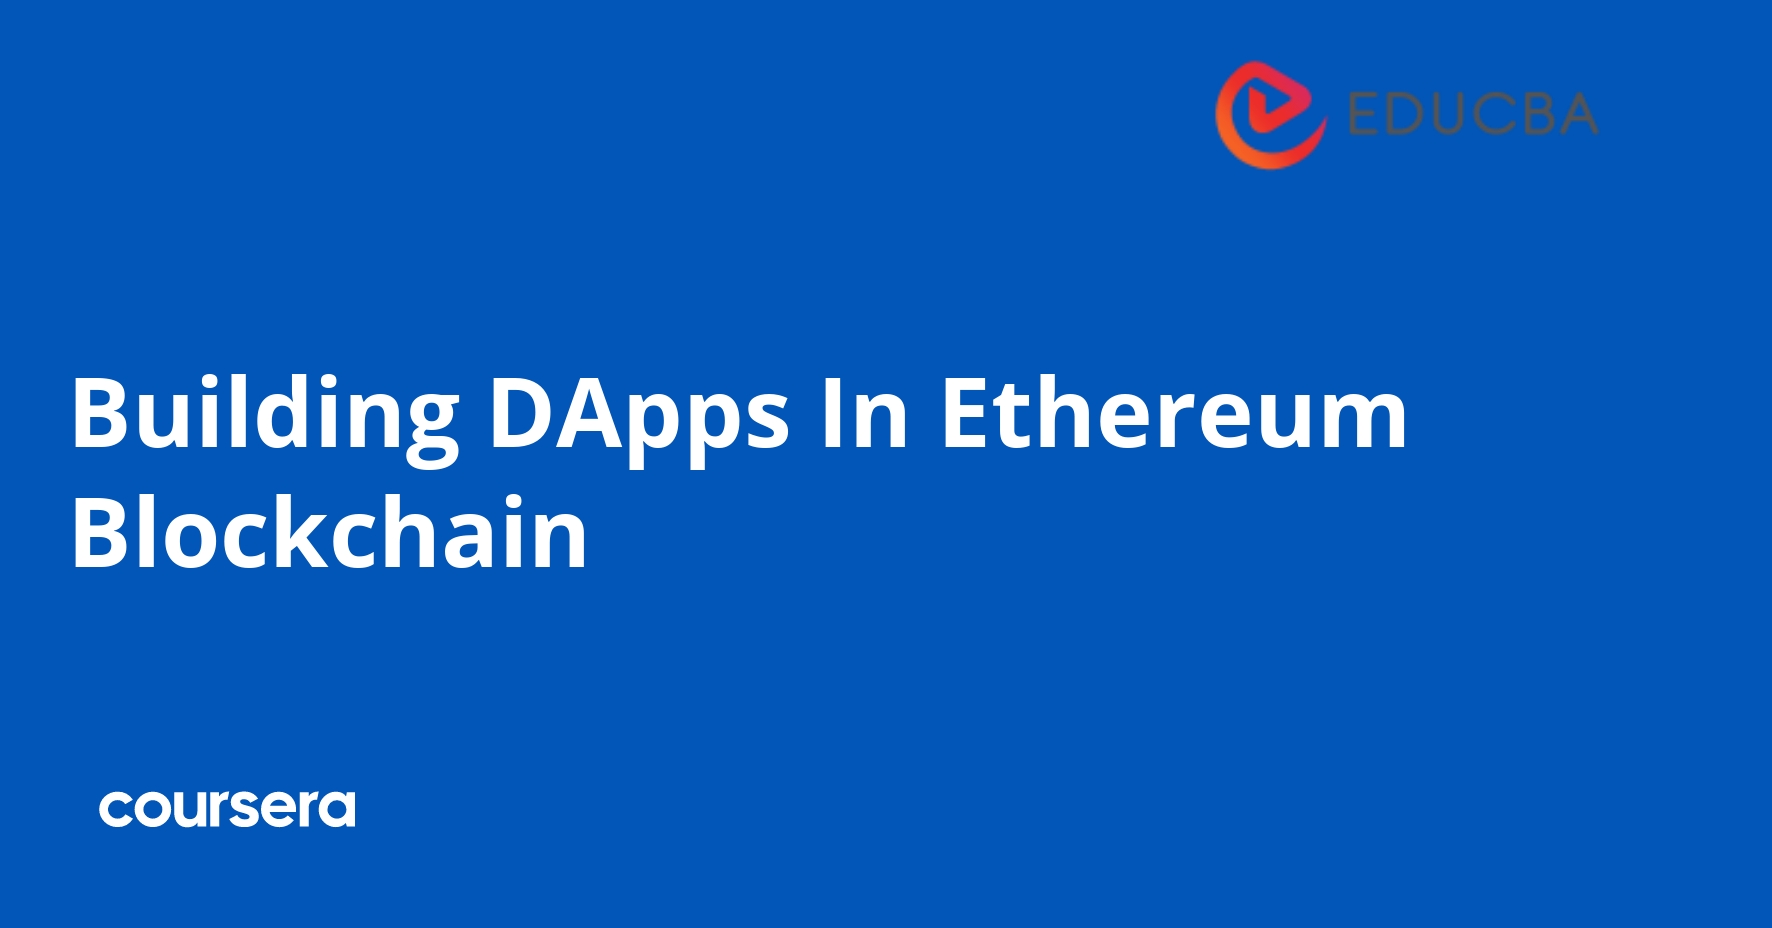 Building DApps In Ethereum Blockchain